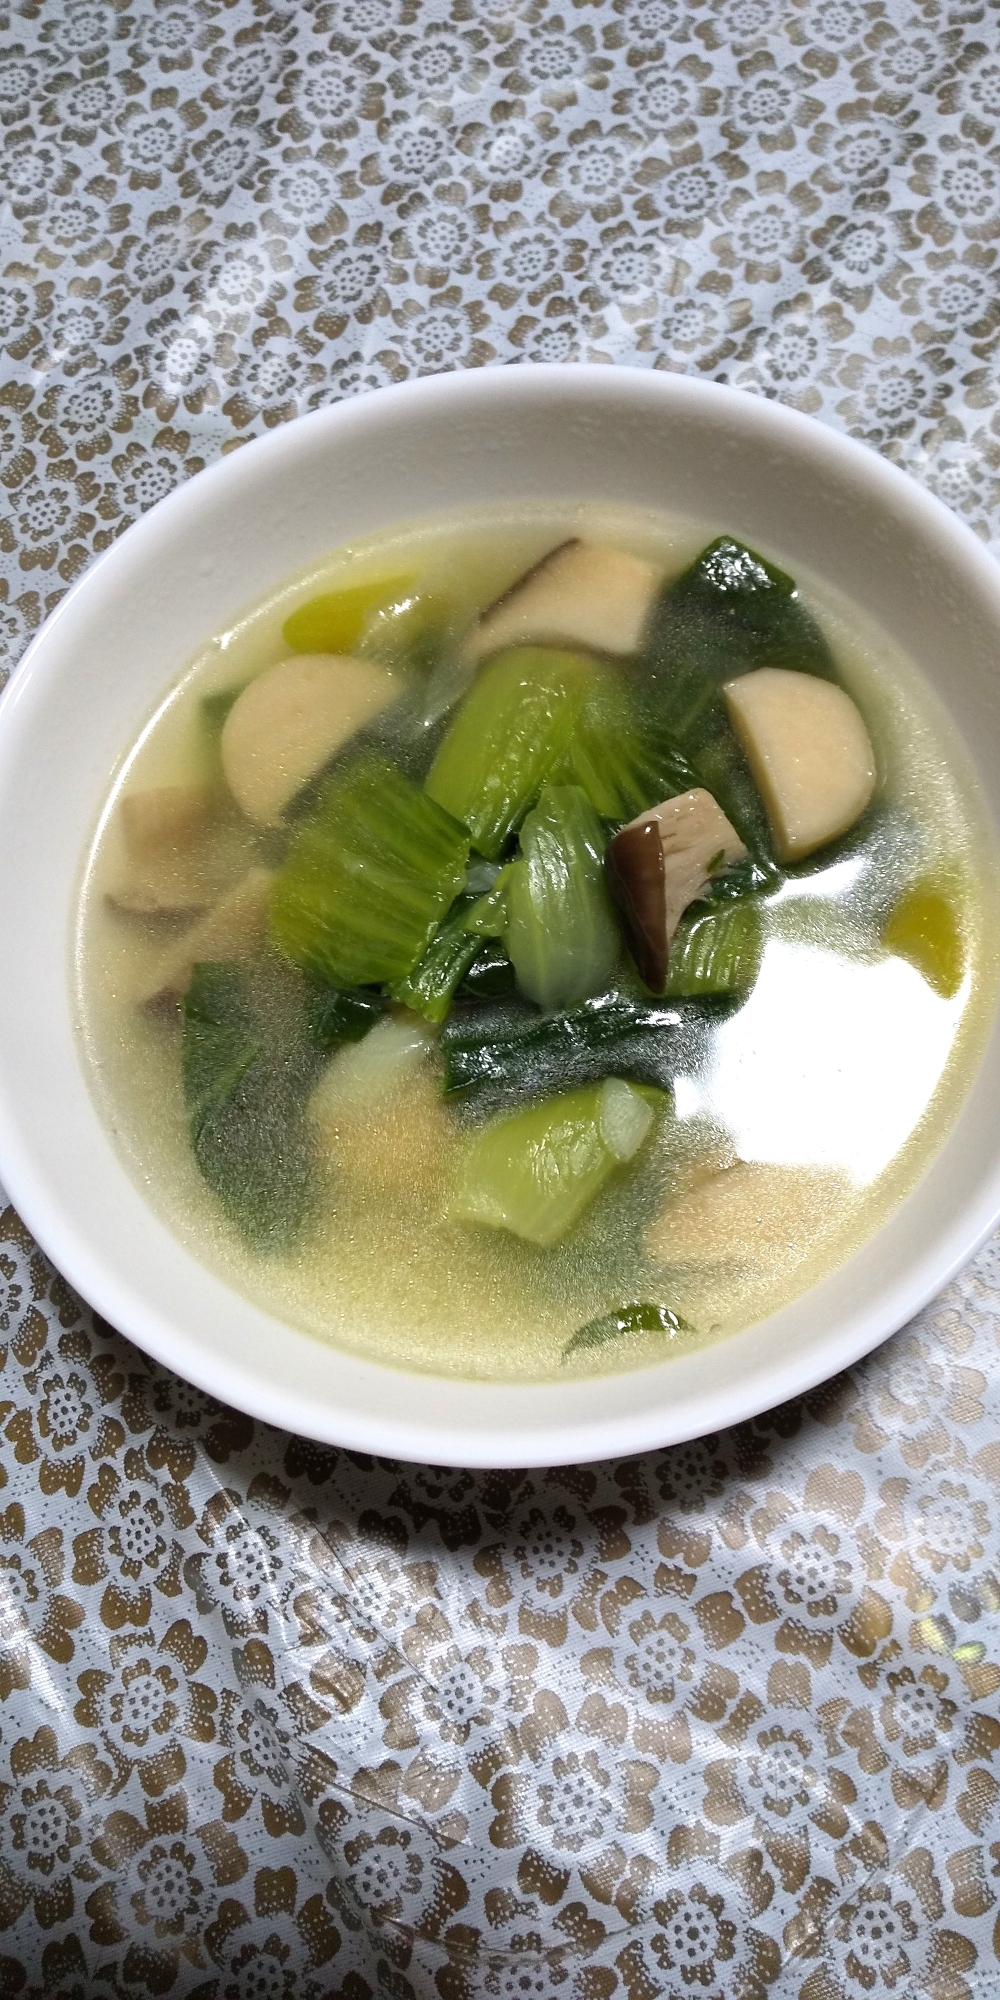 チンゲン菜とエリンギのスープ